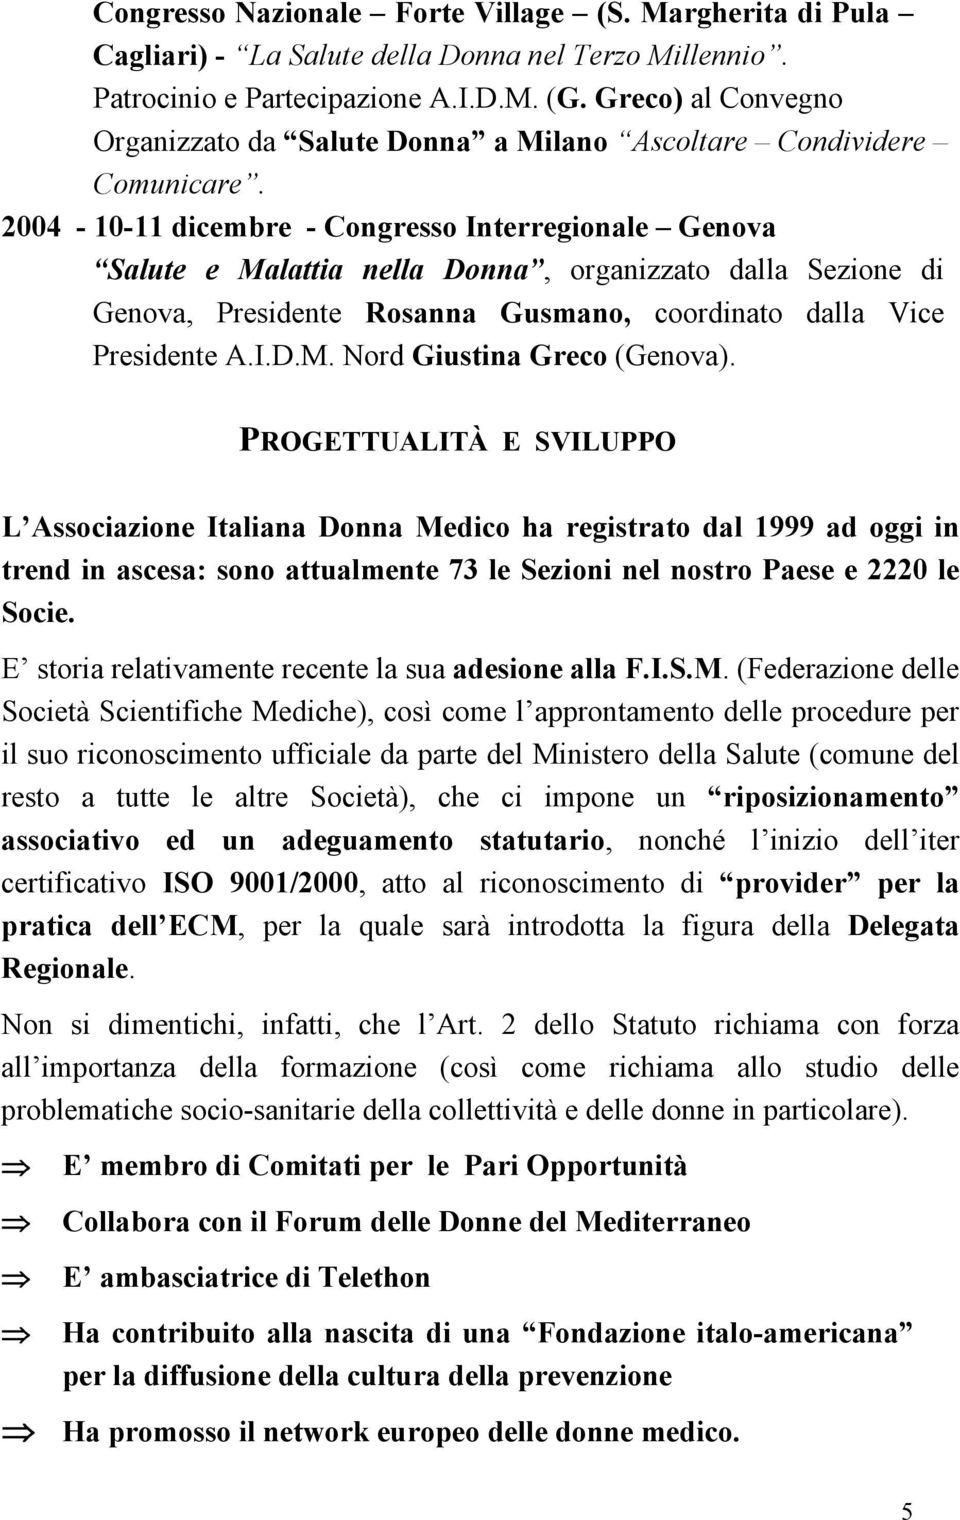 2004-10-11 dicembre - Congresso Interregionale Genova Salute e Malattia nella Donna, organizzato dalla Sezione di Genova, Presidente Rosanna Gusmano, coordinato dalla Vice Presidente A.I.D.M. Nord Giustina Greco (Genova).